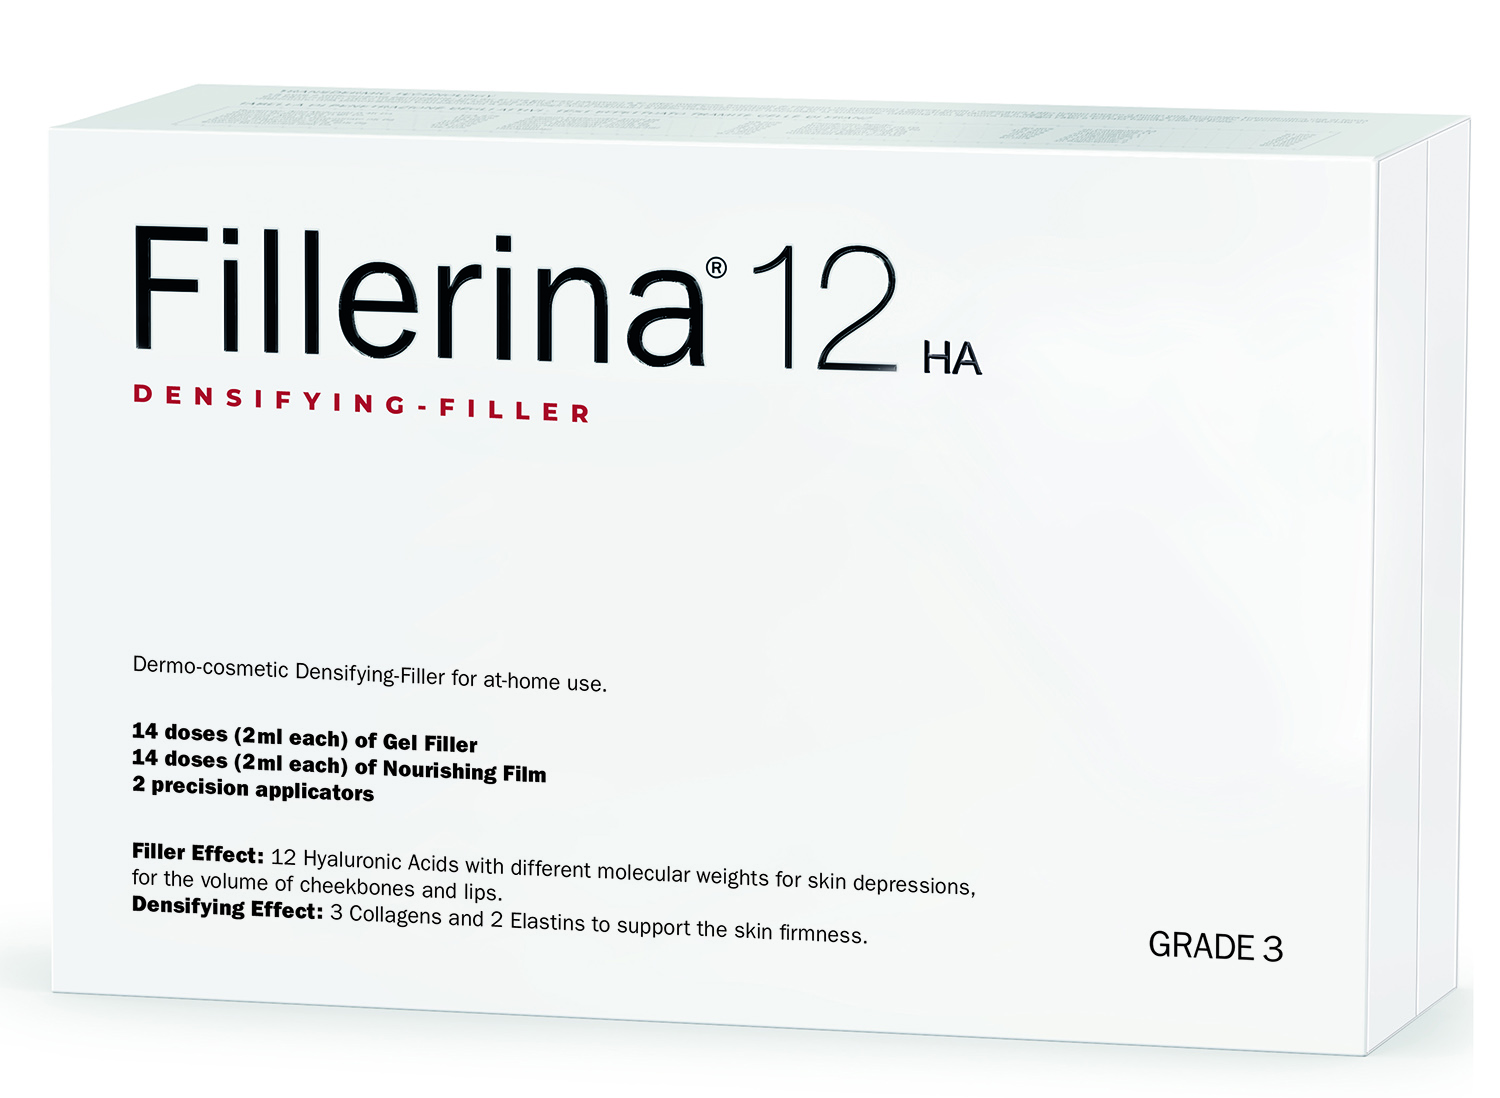 гель филлер для скул fillerina cheekbones grade 3 15 мл Fillerina Дермо-косметический набор с укрепляющим эффектом Intensive уровень 3, 2 флакона х 30 мл (Fillerina, 12 HA Densifying-Filler)